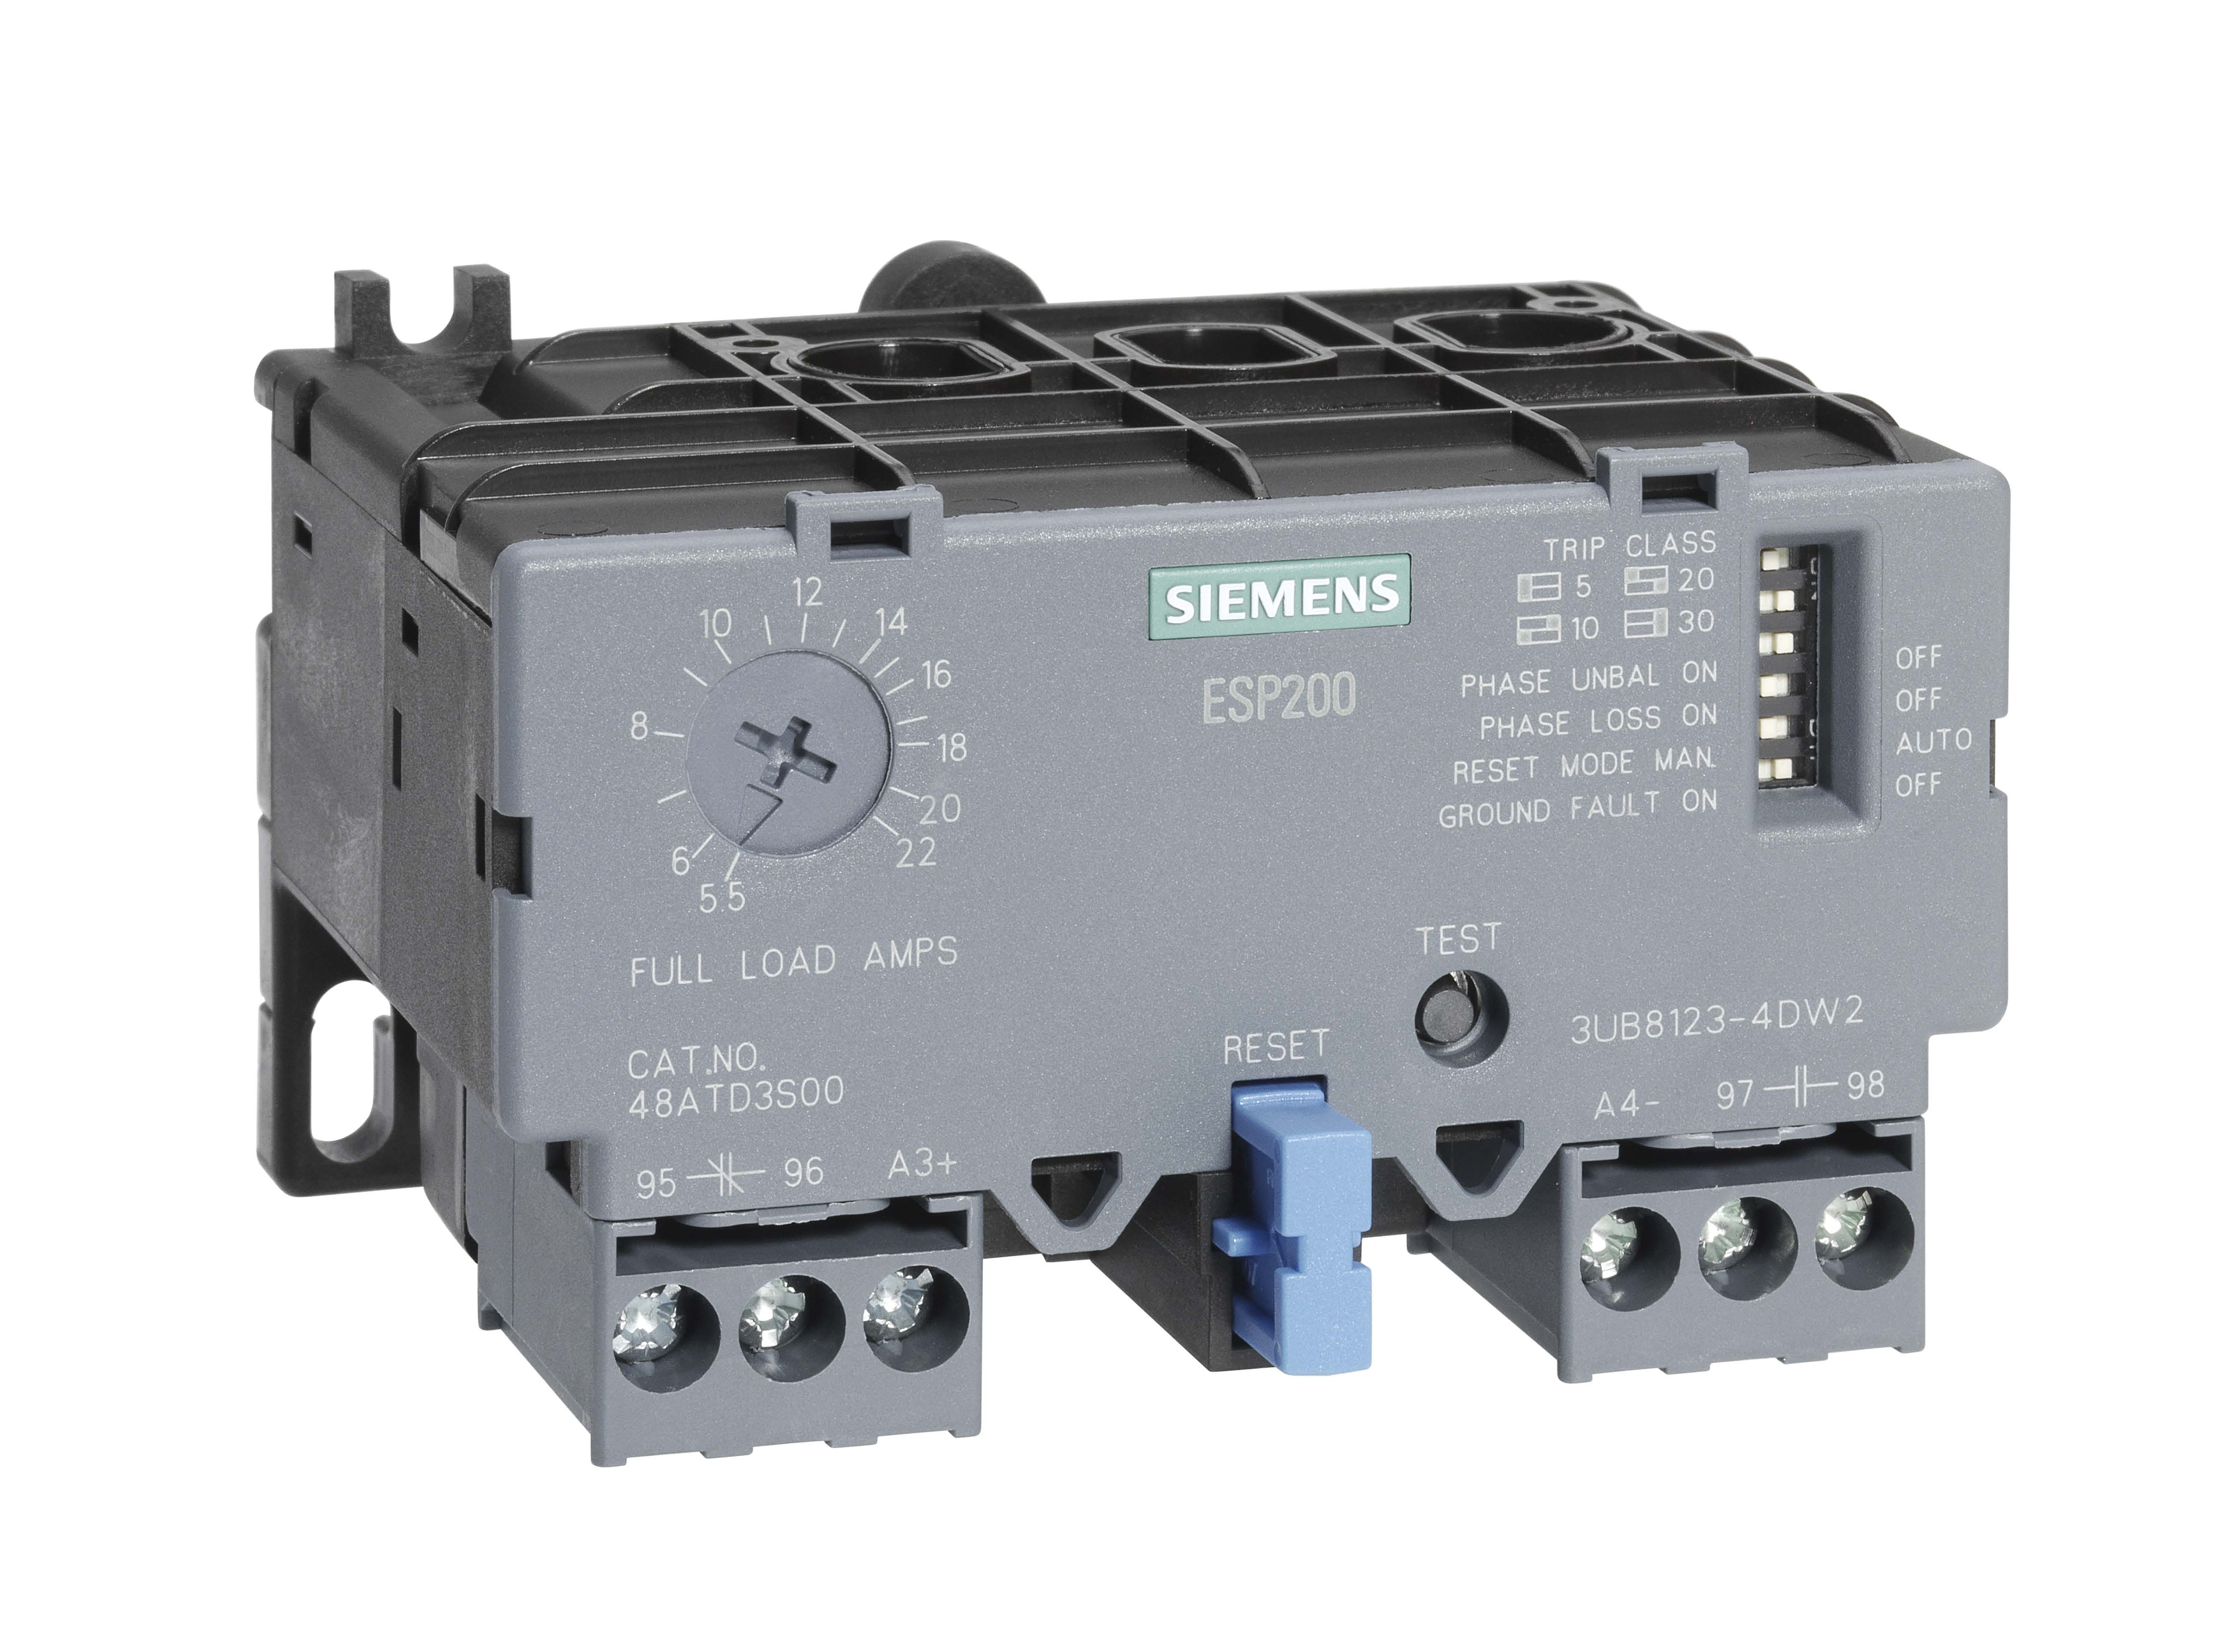 Siemens Controls 3UB81234DW2 3UB81234DW2: Siemens Controls Overload Relay,5.5-22Amps,3Ph,ESP200 https://gesrepair.com/wp-content/uploads/2020/AB_Images/Siemens%20Controls_3UB81234DW2.jpg